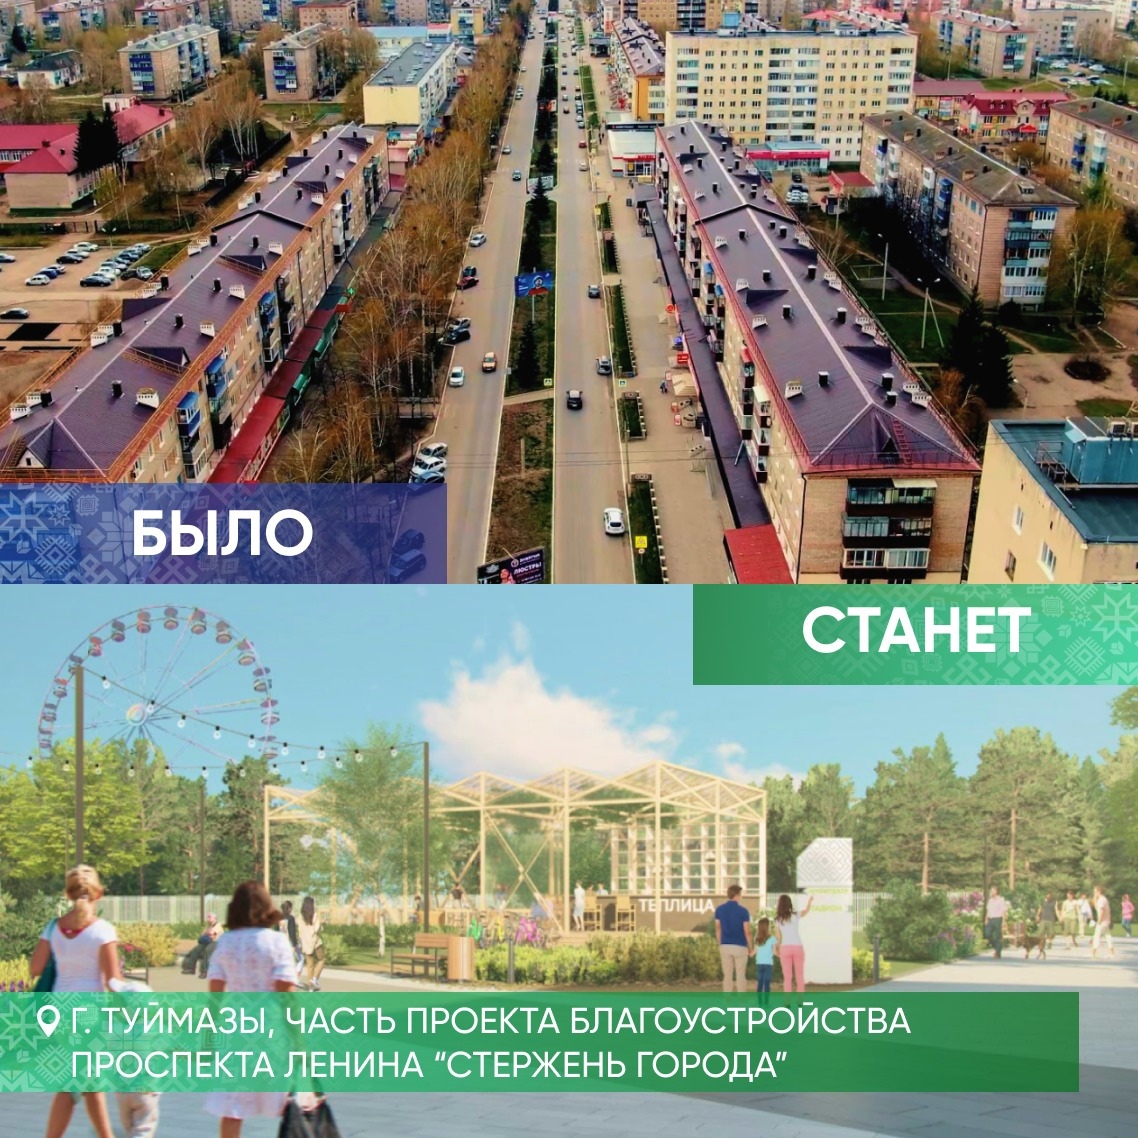 Шесть городов Башкирии победили в федеральном конкурсе по формированию комфортной городской среды